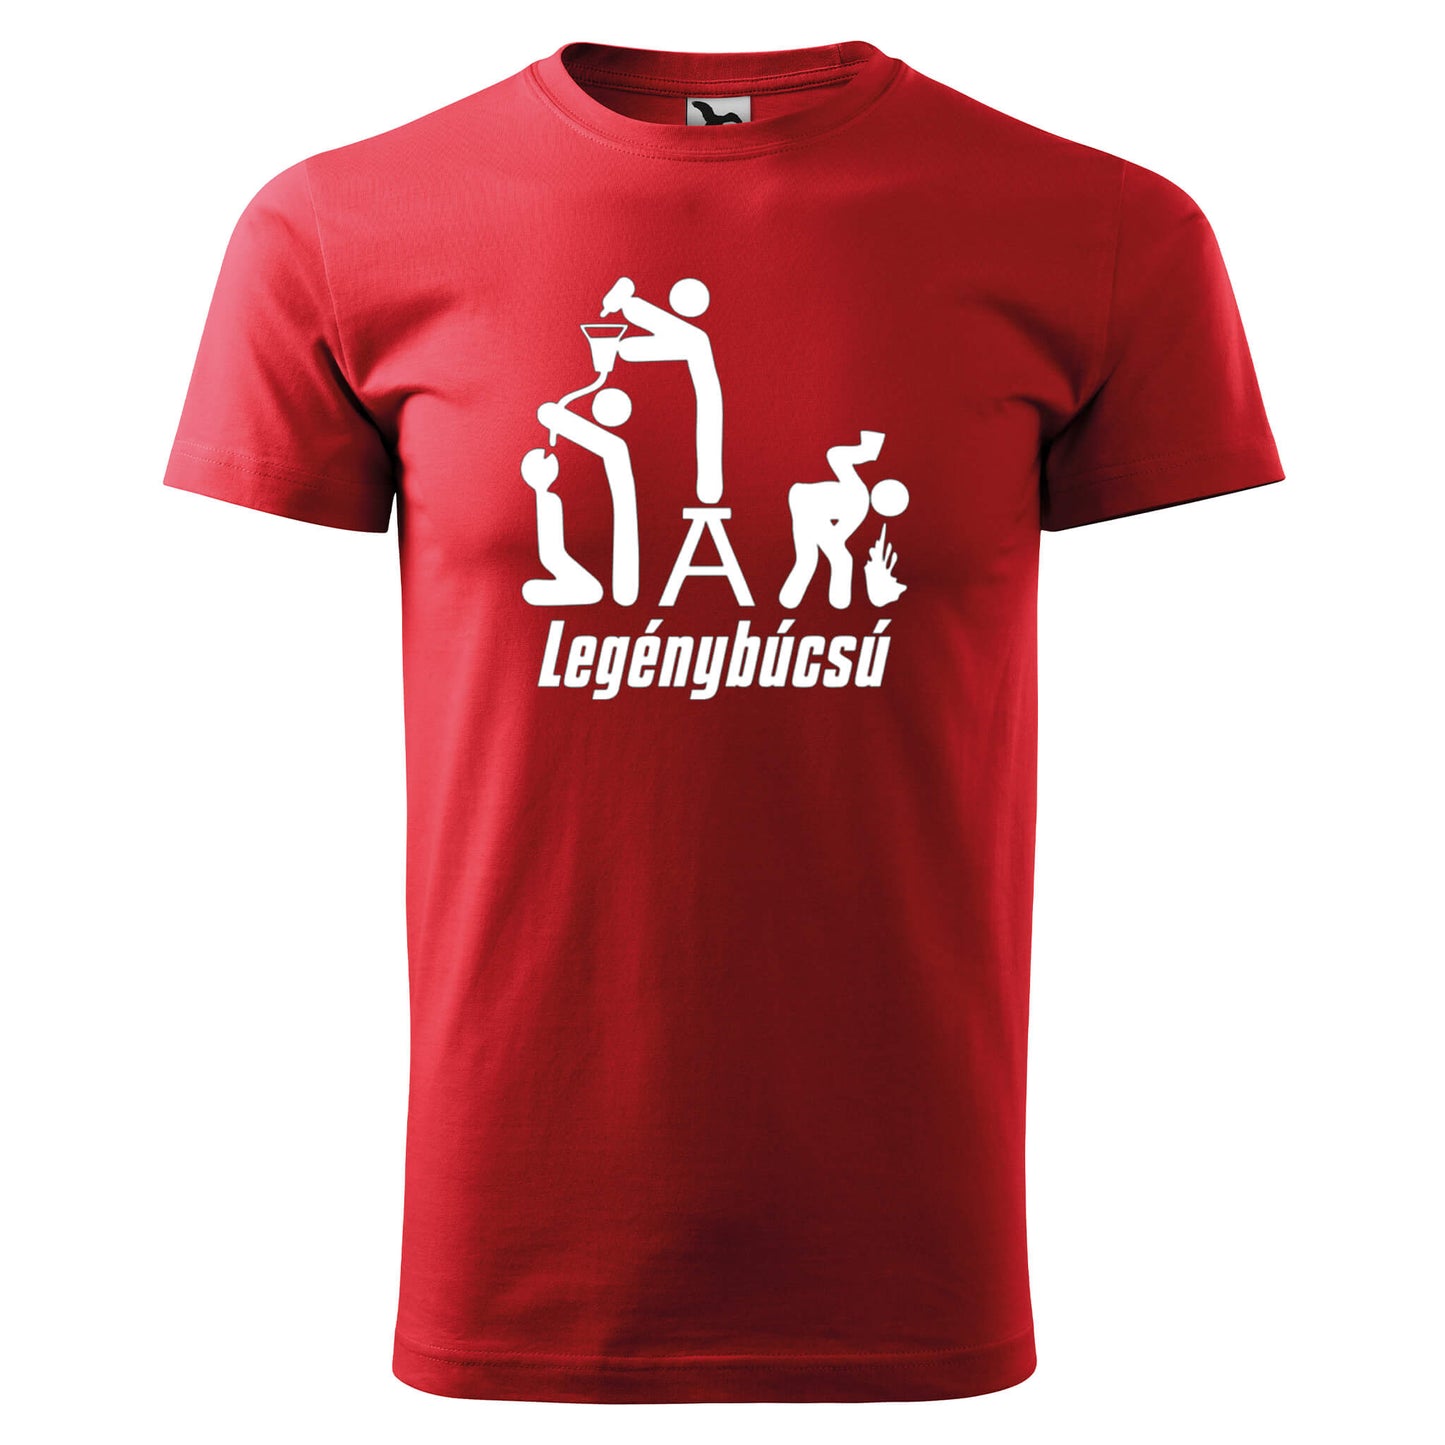 T-shirt - Legénybúcsú